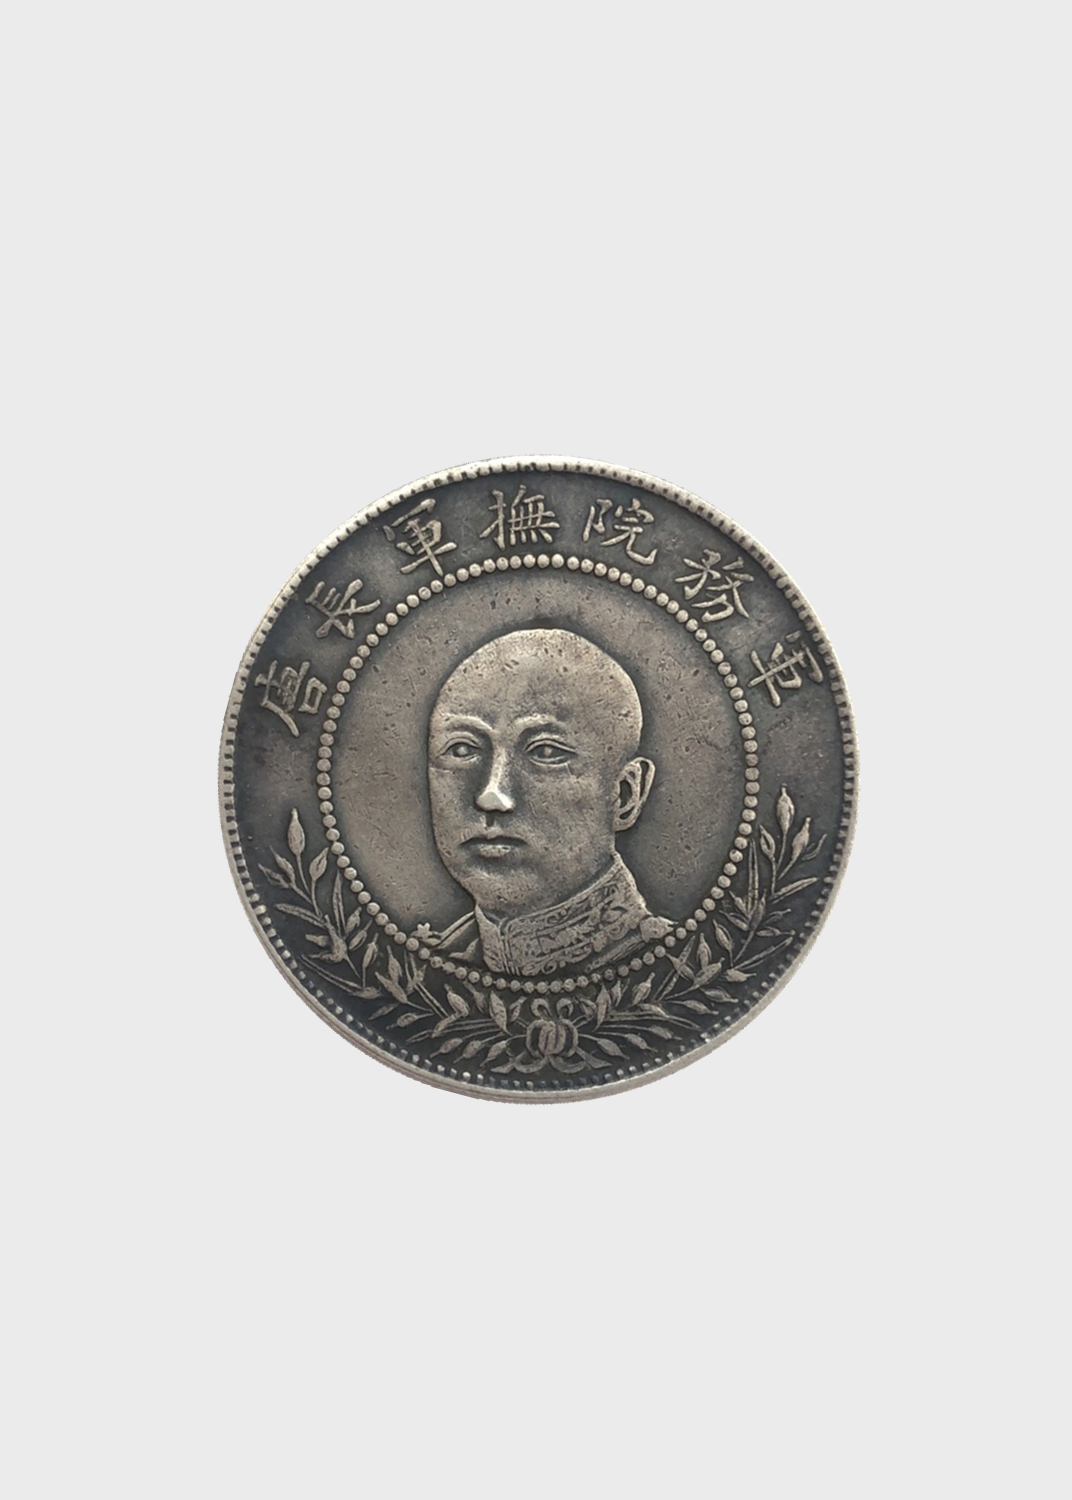 唐继尧银币是云南省为纪念反袁拥护共和胜利而制造发行的